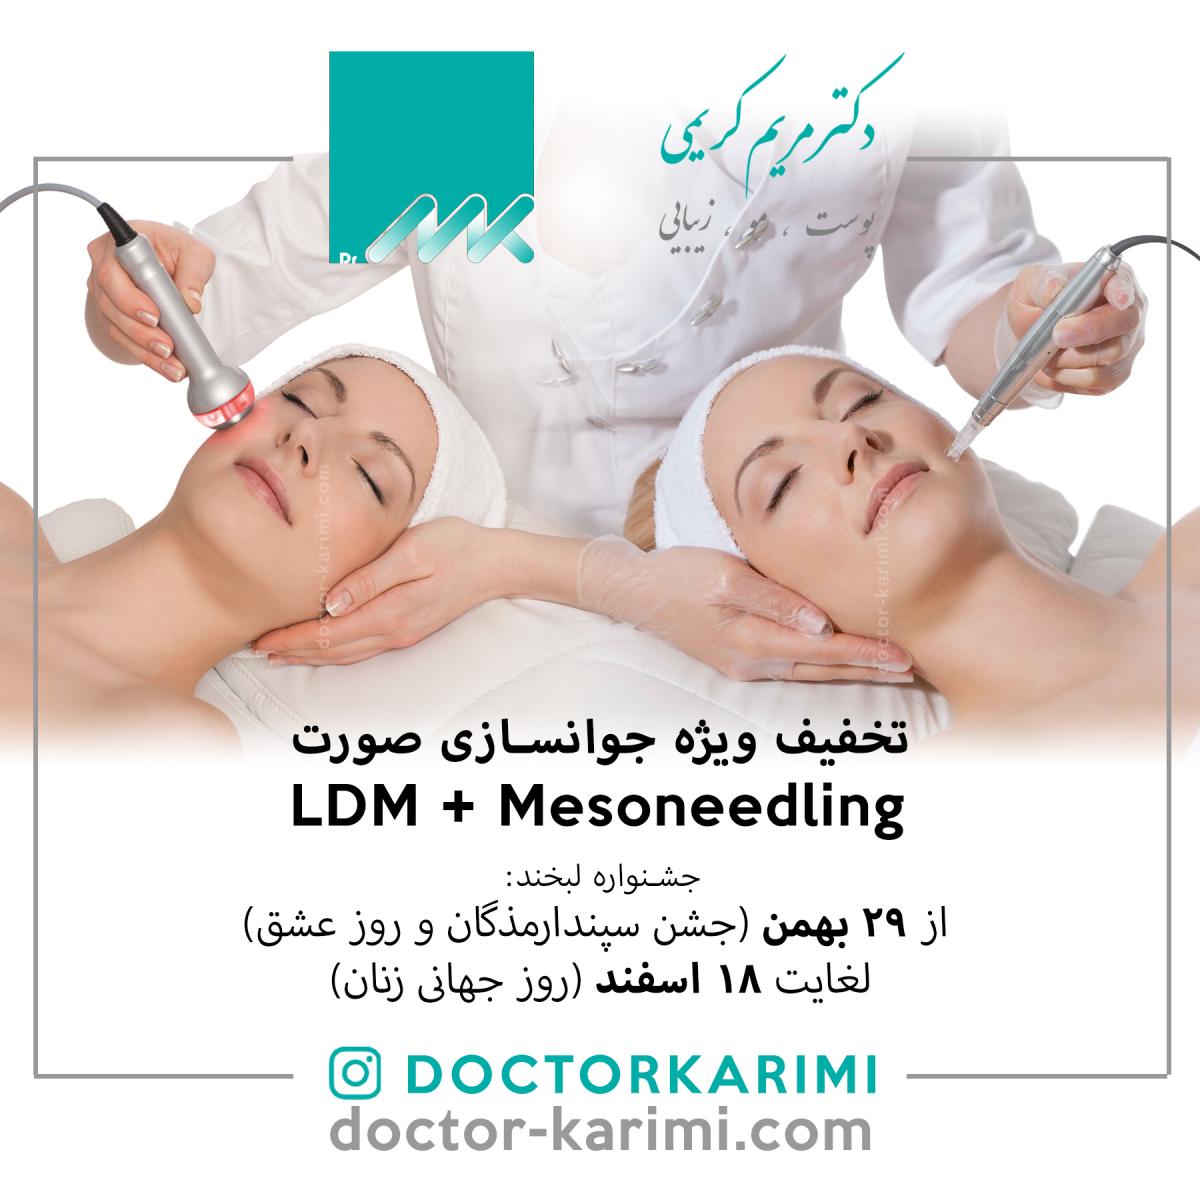 LDM MED + Mesoneedling